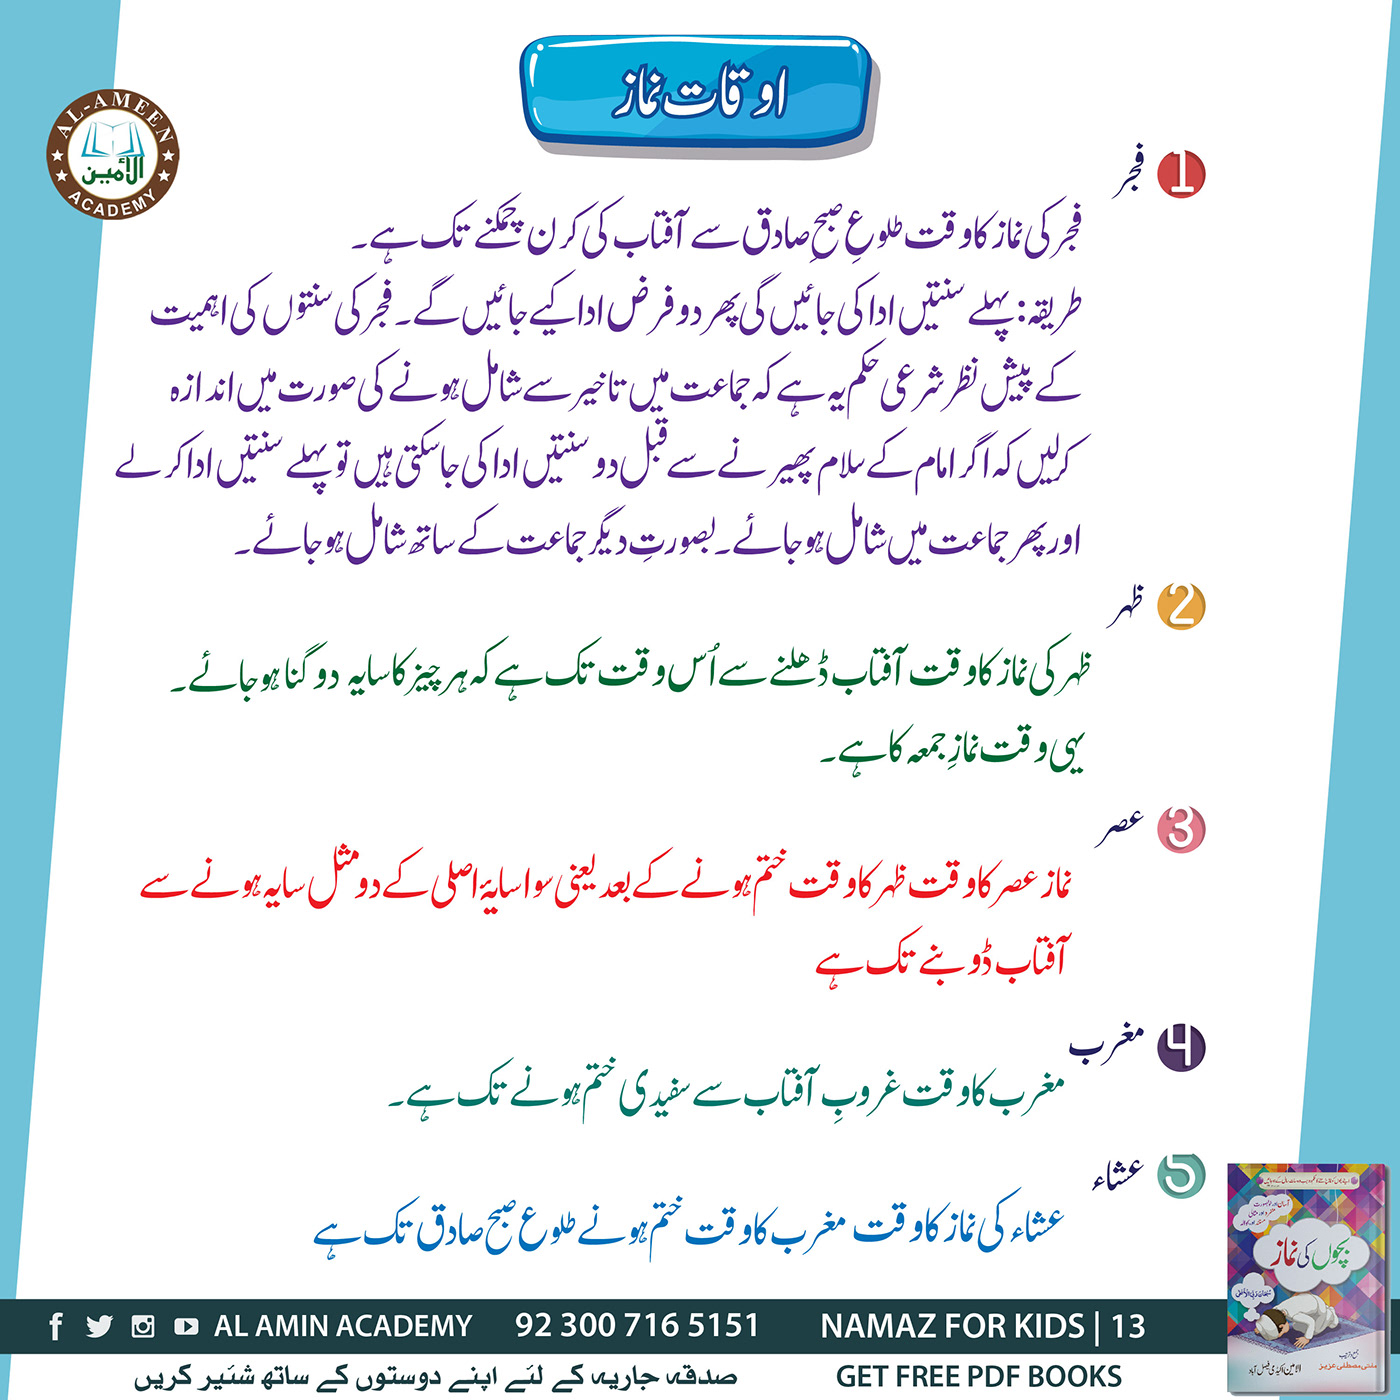 namaz islam Quran book madina makkah saudia Pakistan Method islamic